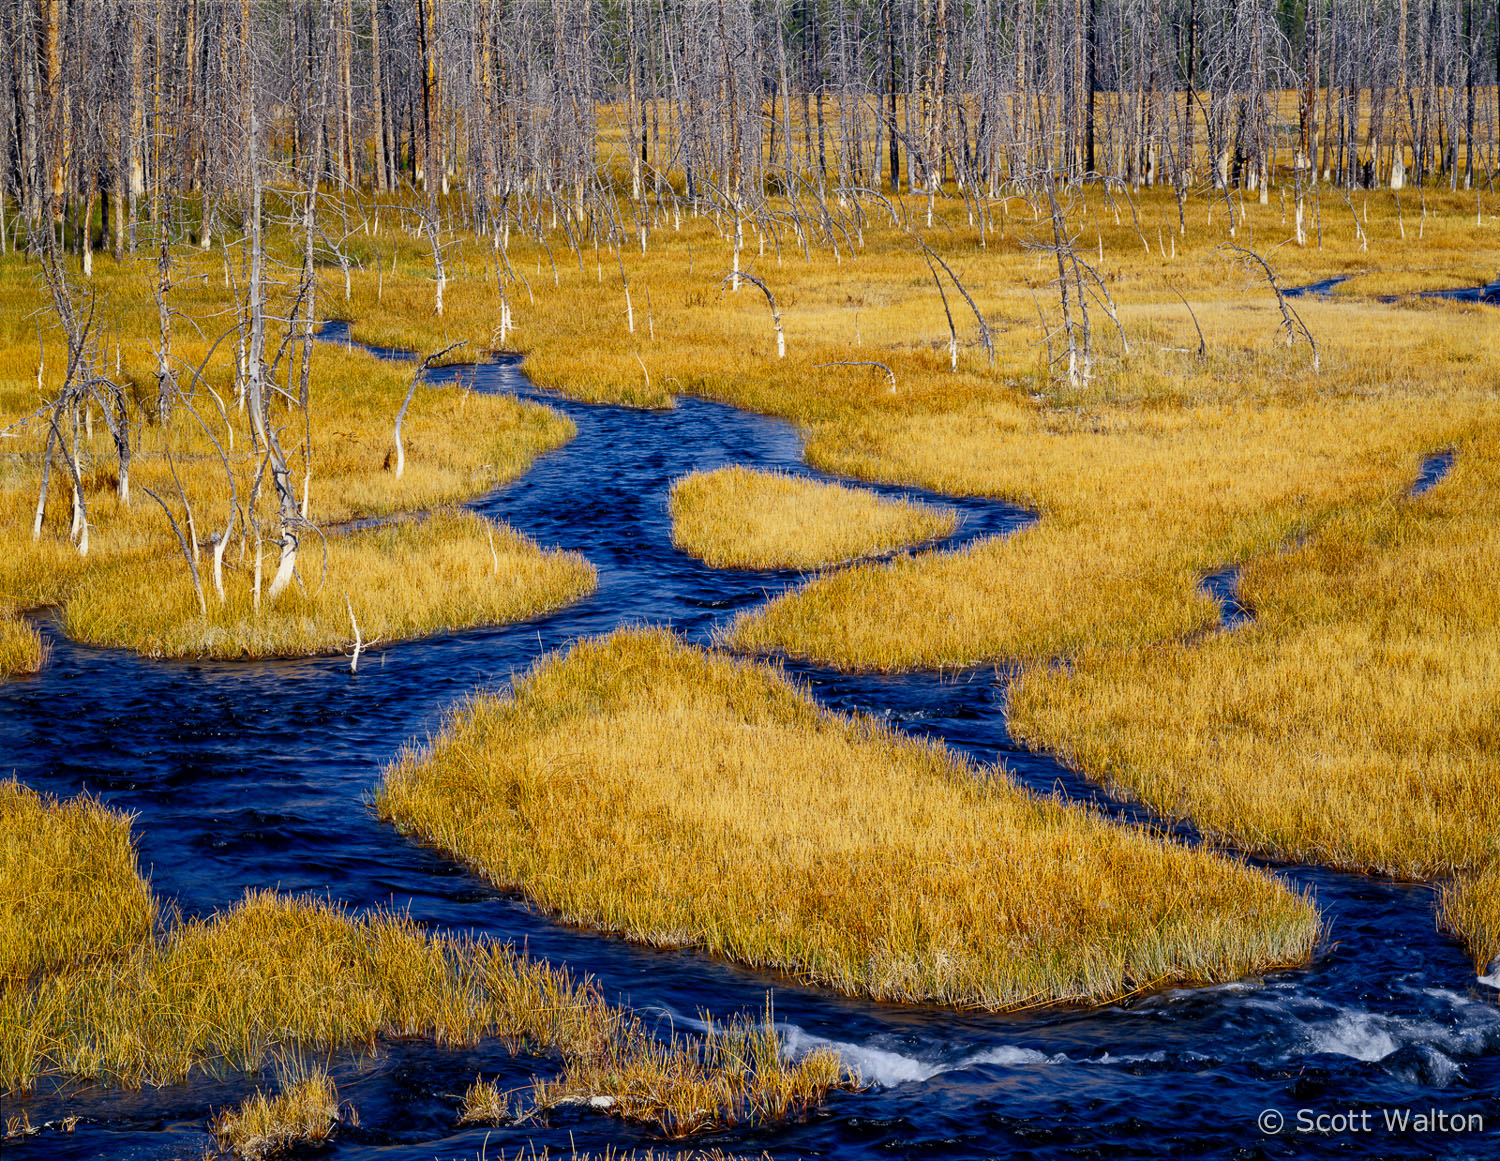 blue-braided-stream-yellowstone-national-park-wyoming.jpg